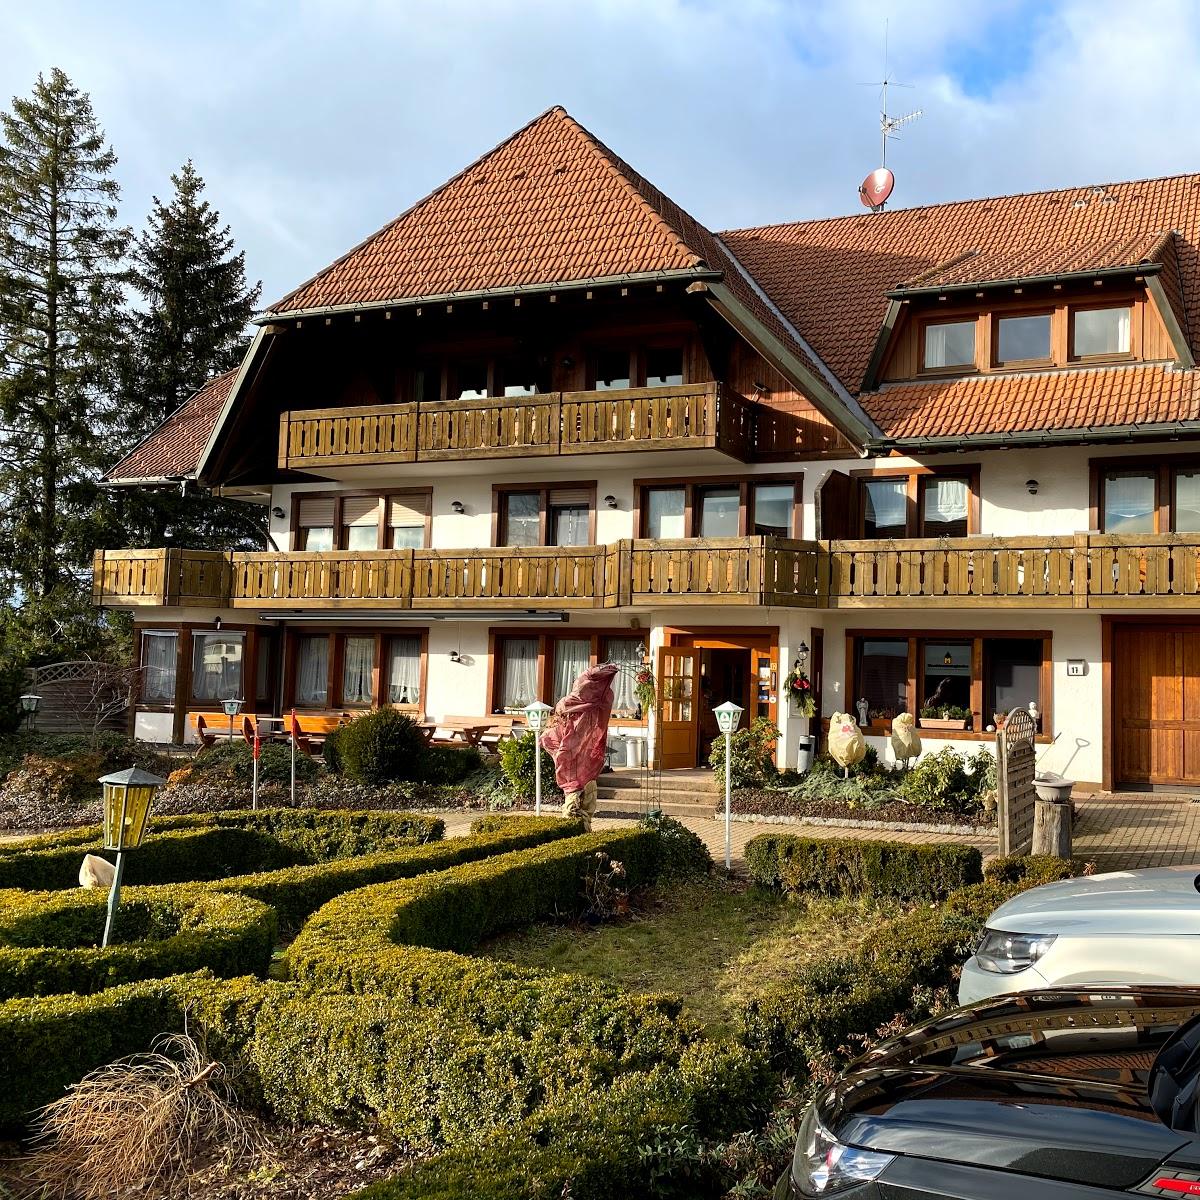 Restaurant "Hotel Landgasthof Kranz, Familie Späne" in Görwihl